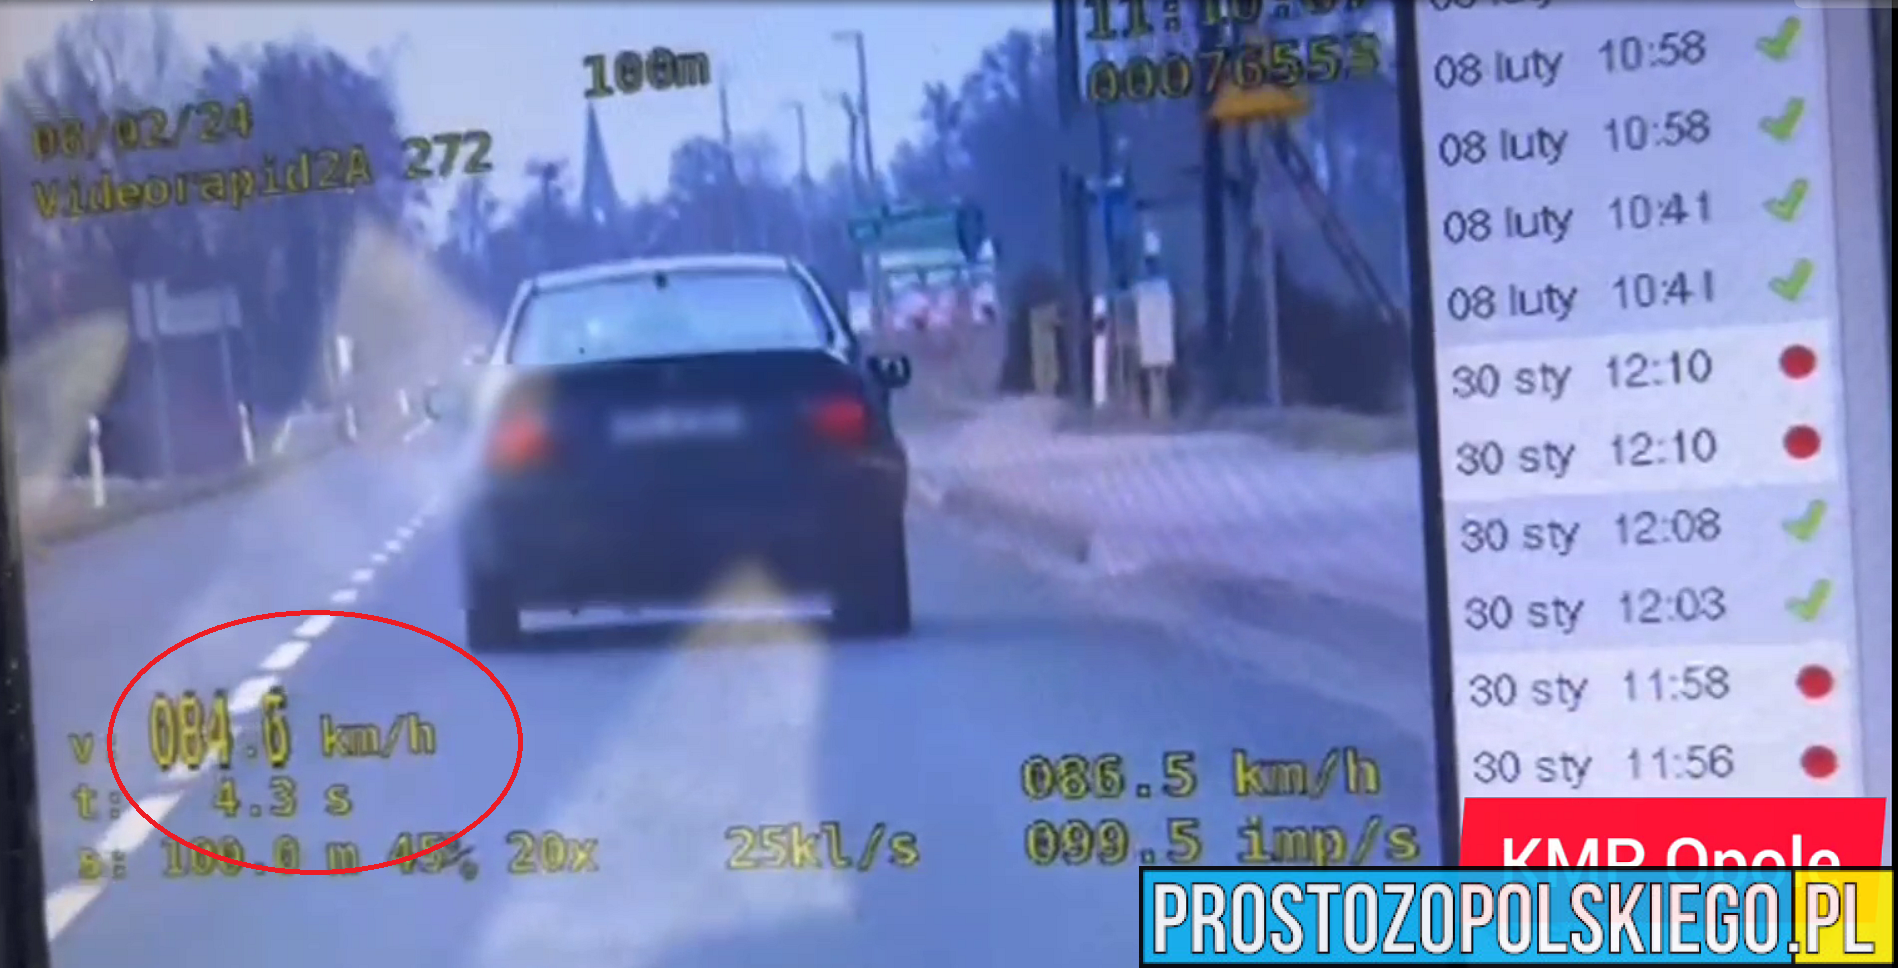 53-letni kierowca BMW został zatrzymany przez policję za przekroczenie prędkości, dodatkowo był pijany i nie miał prawo jazdy.(Wideo)